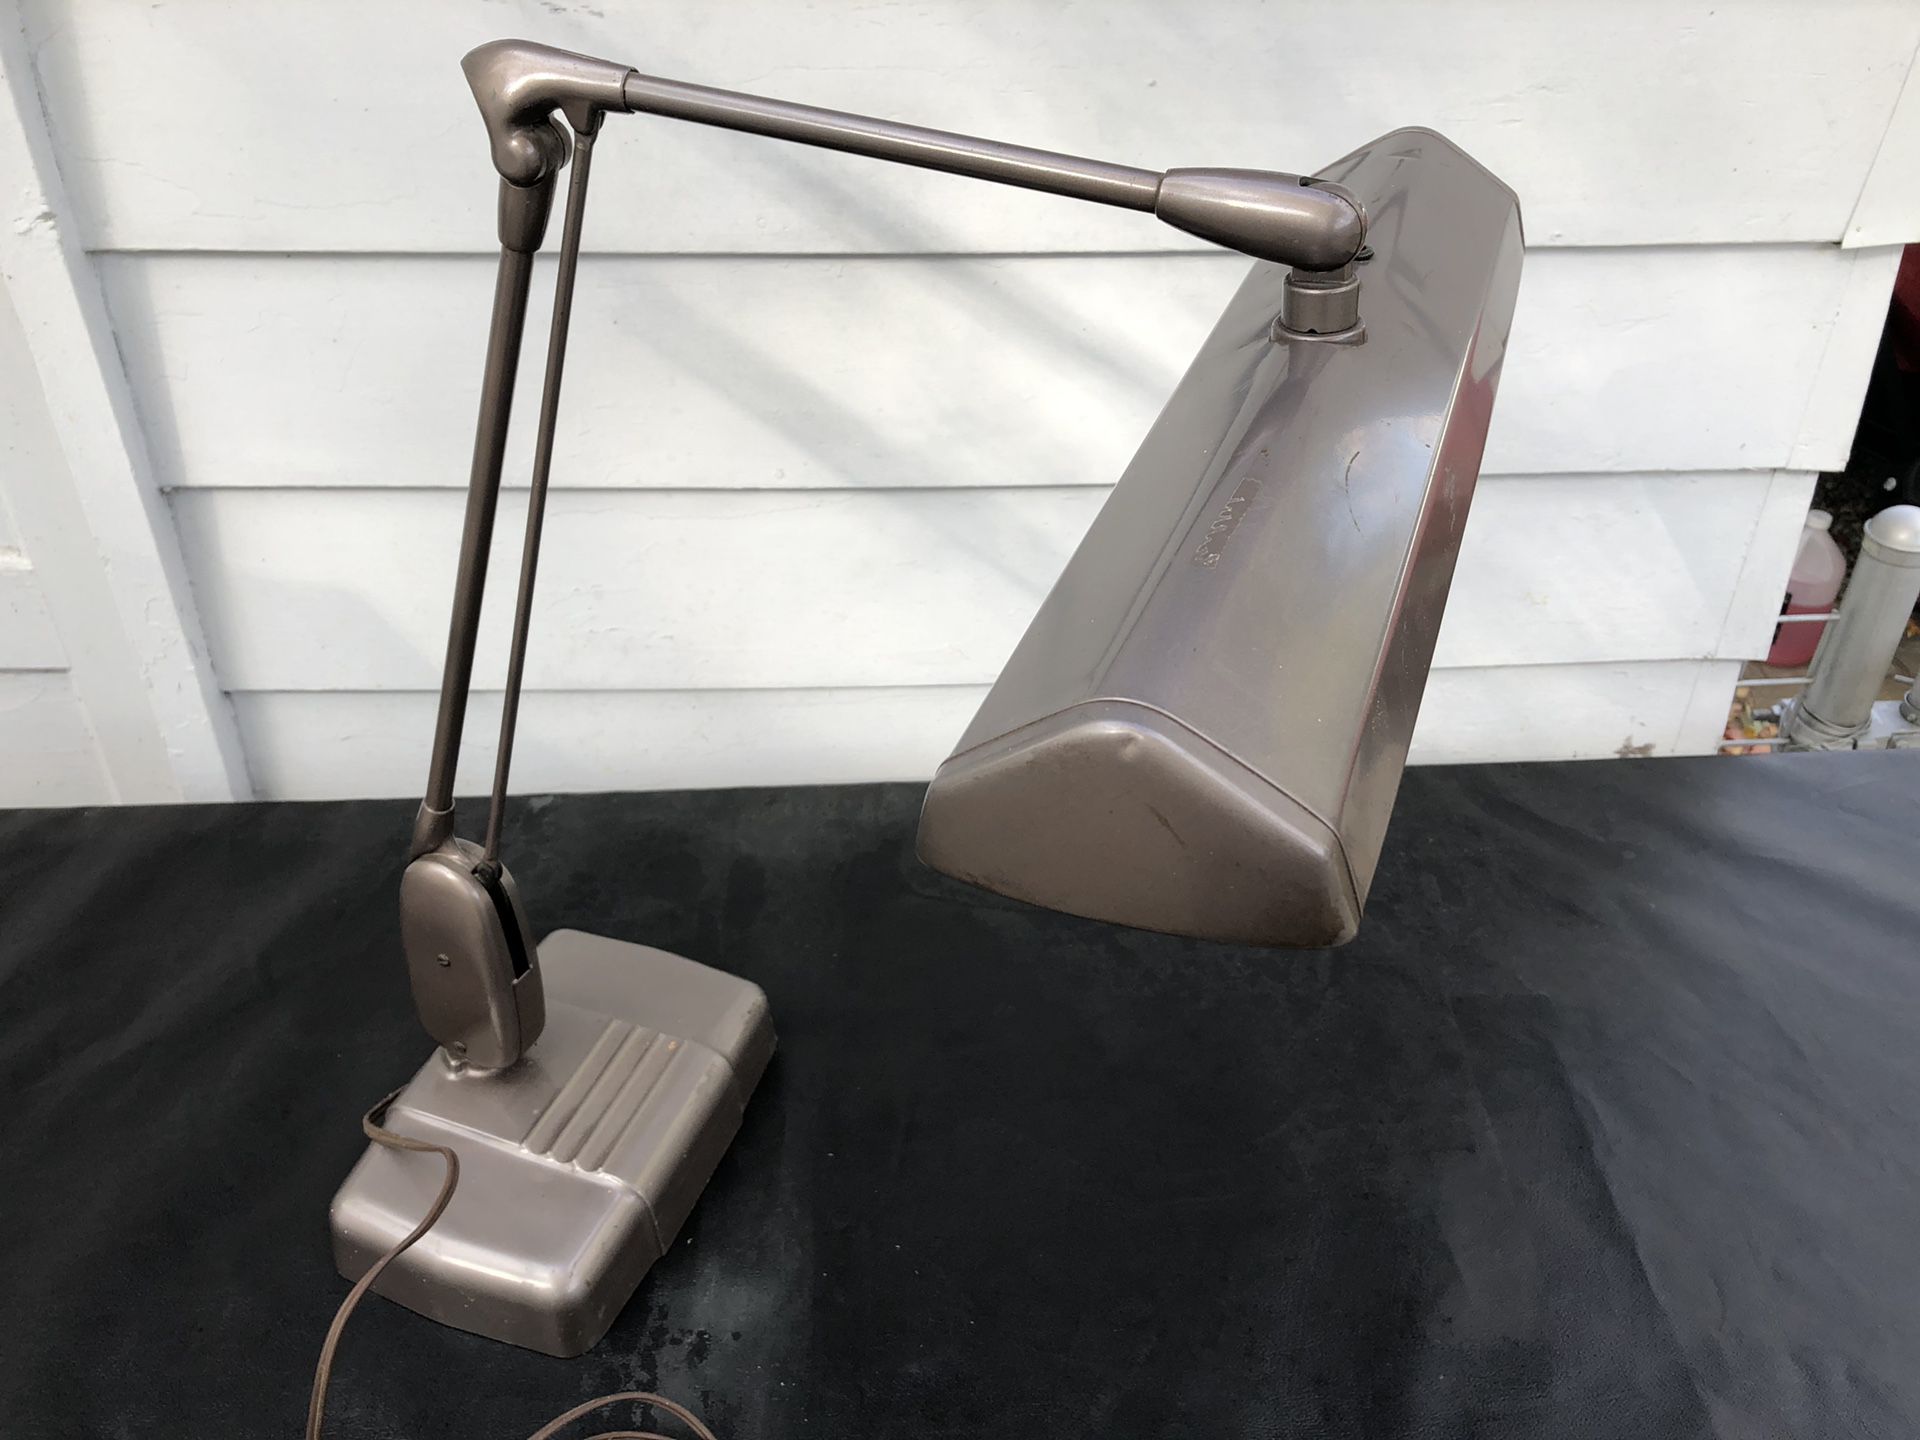 Dazor vintage Floating fixture work station/desk lamp